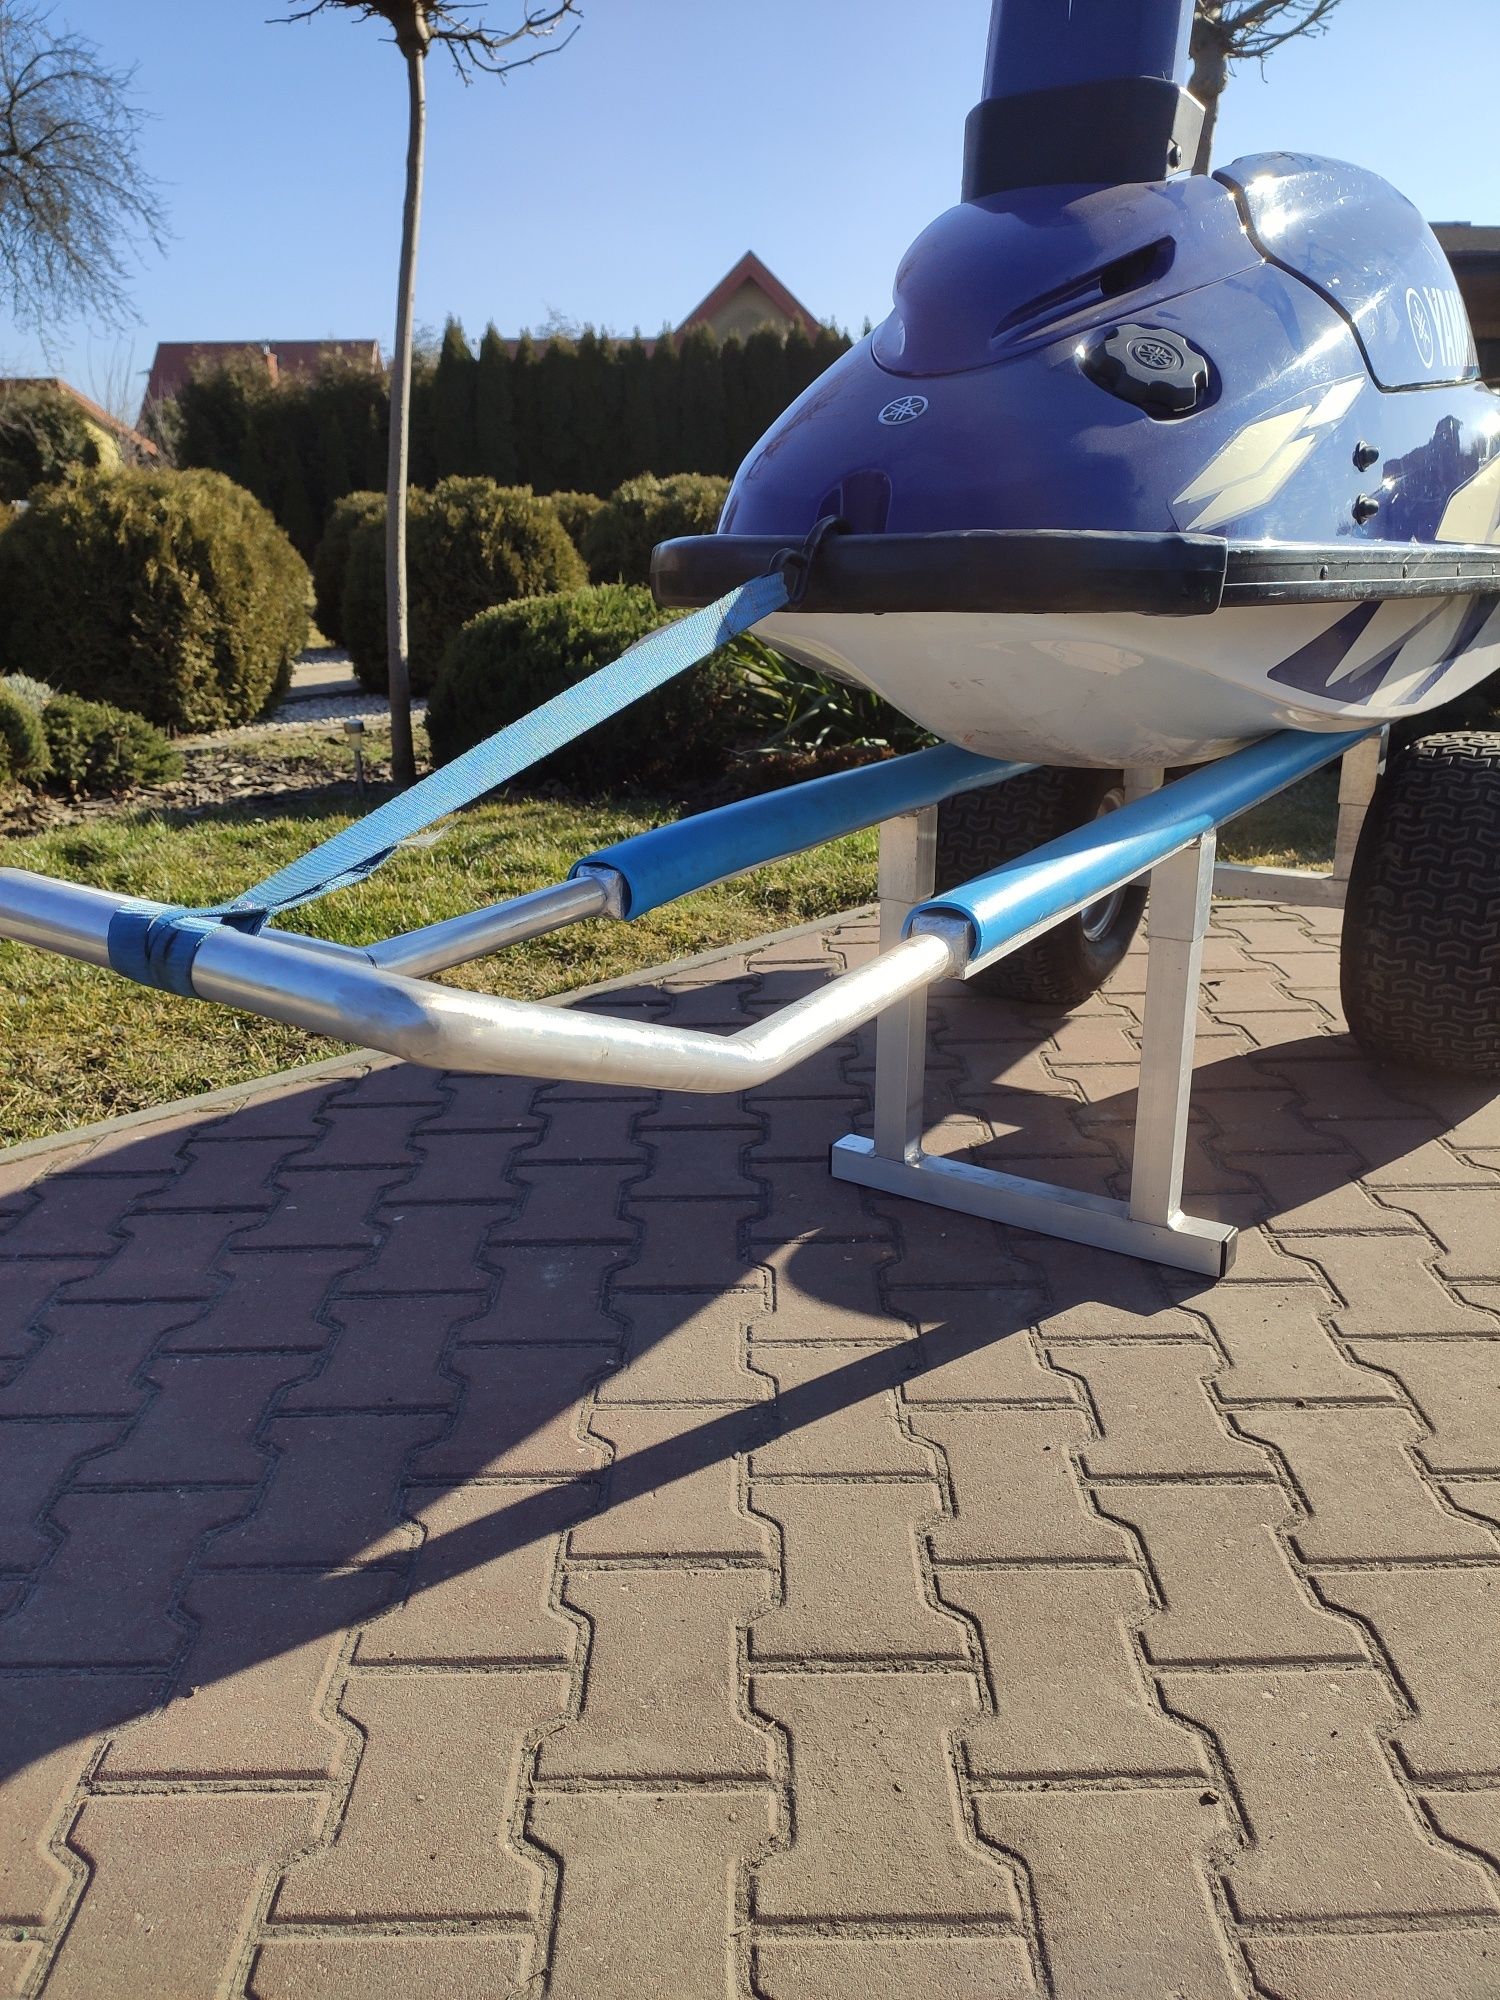 Wózek pod skuter wodny, wózek slipowy aluminiowy Jet ski